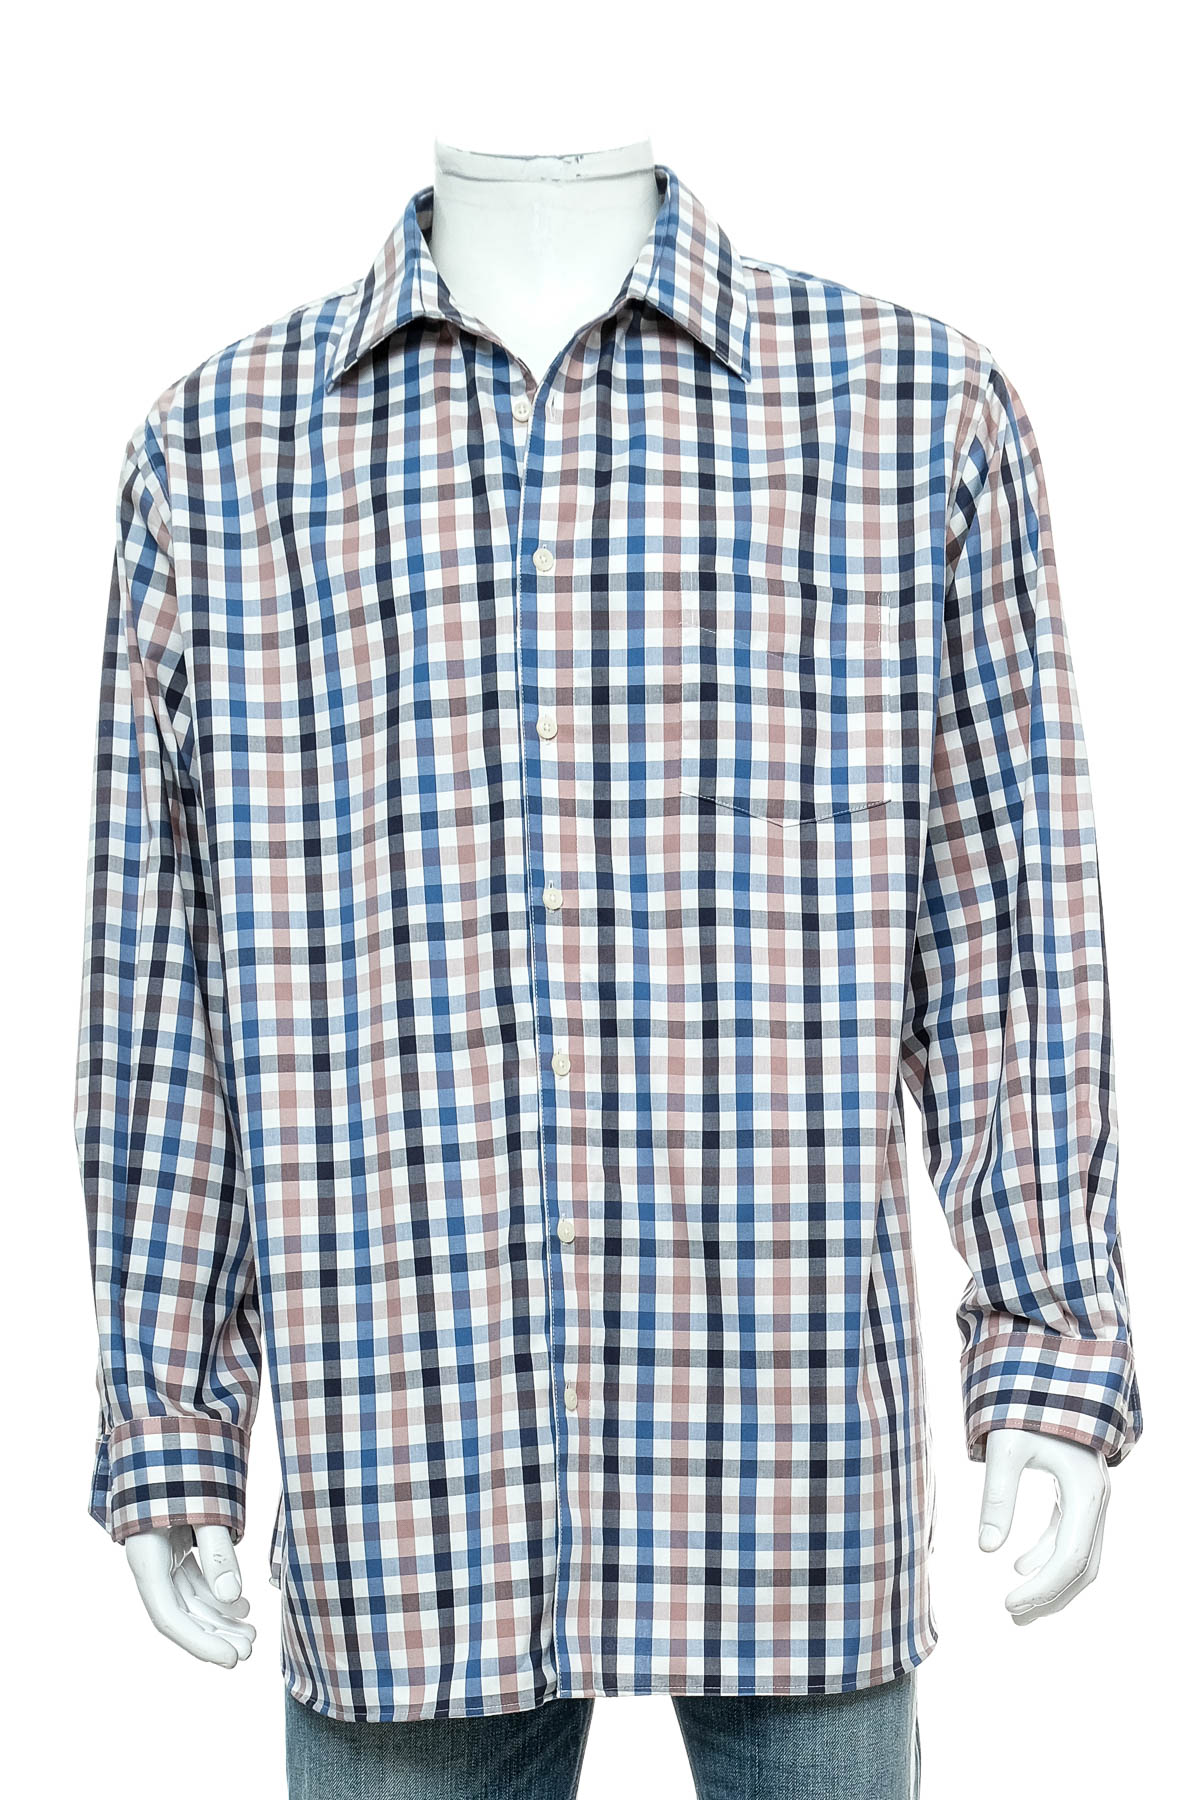 Ανδρικό πουκάμισο - Walbusch - 0